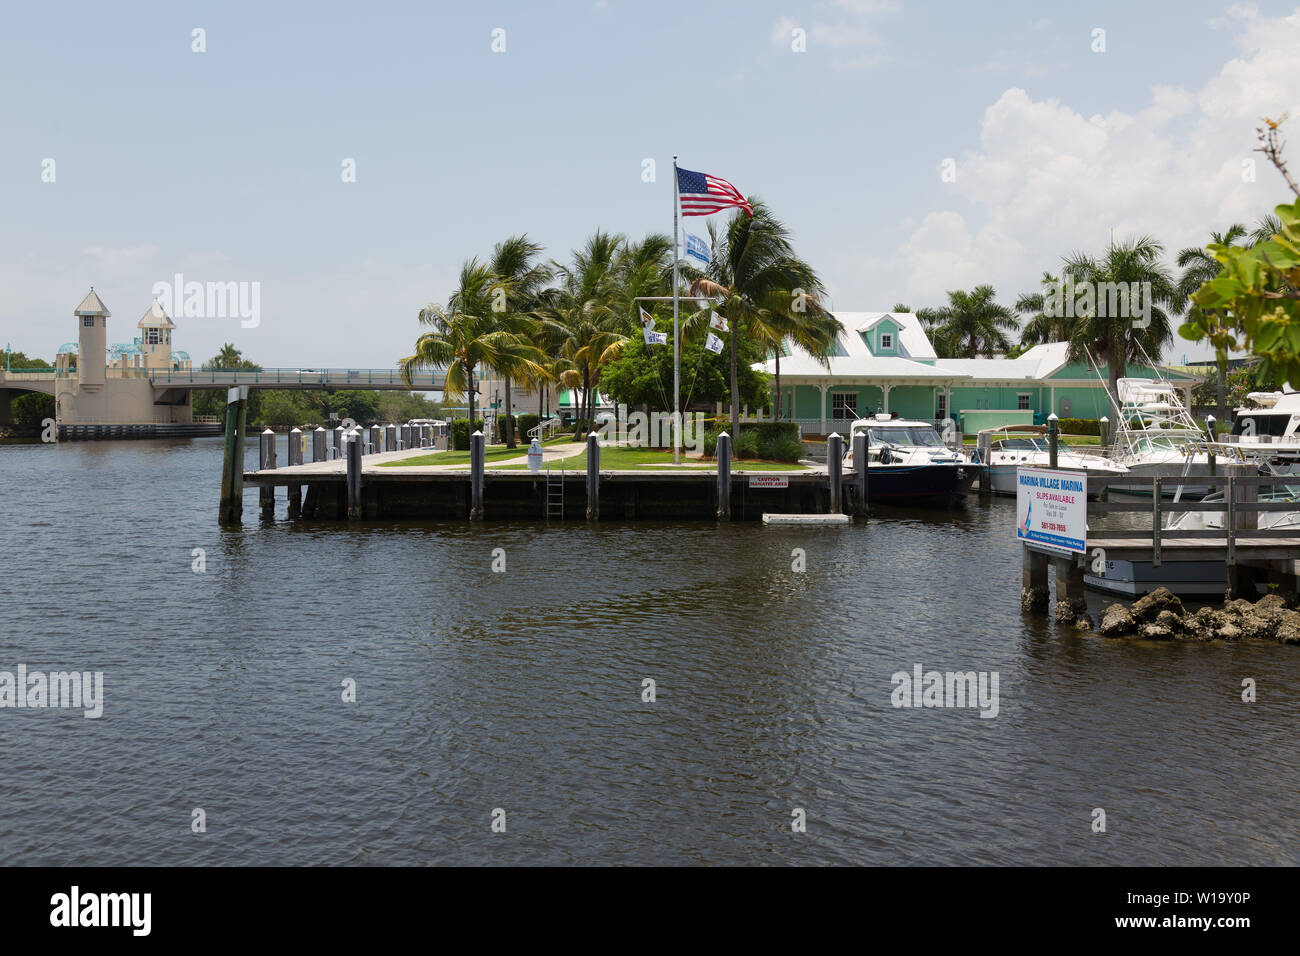 La recherche à travers l'eau du parc en direction de la Mangrove ancienne gloire survolant la Boynton Harbour Marina dans la région de Boynton Beach, Floride, USA. Banque D'Images